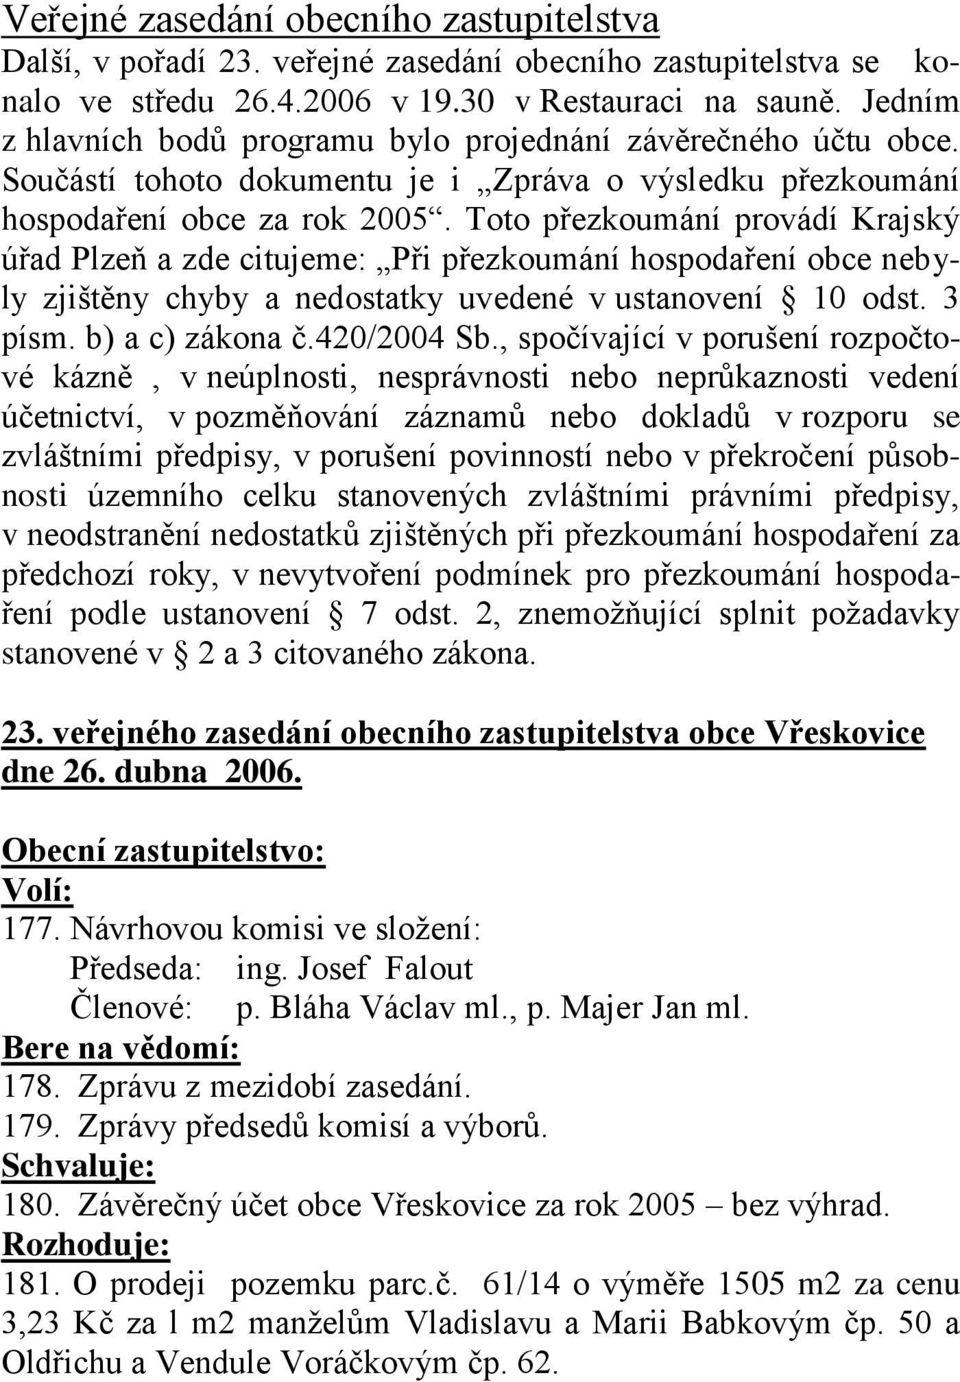 Toto přezkoumání provádí Krajský úřad Plzeň a zde citujeme: Při přezkoumání hospodaření obce nebyly zjištěny chyby a nedostatky uvedené v ustanovení 10 odst. 3 písm. b) a c) zákona č.420/2004 Sb.